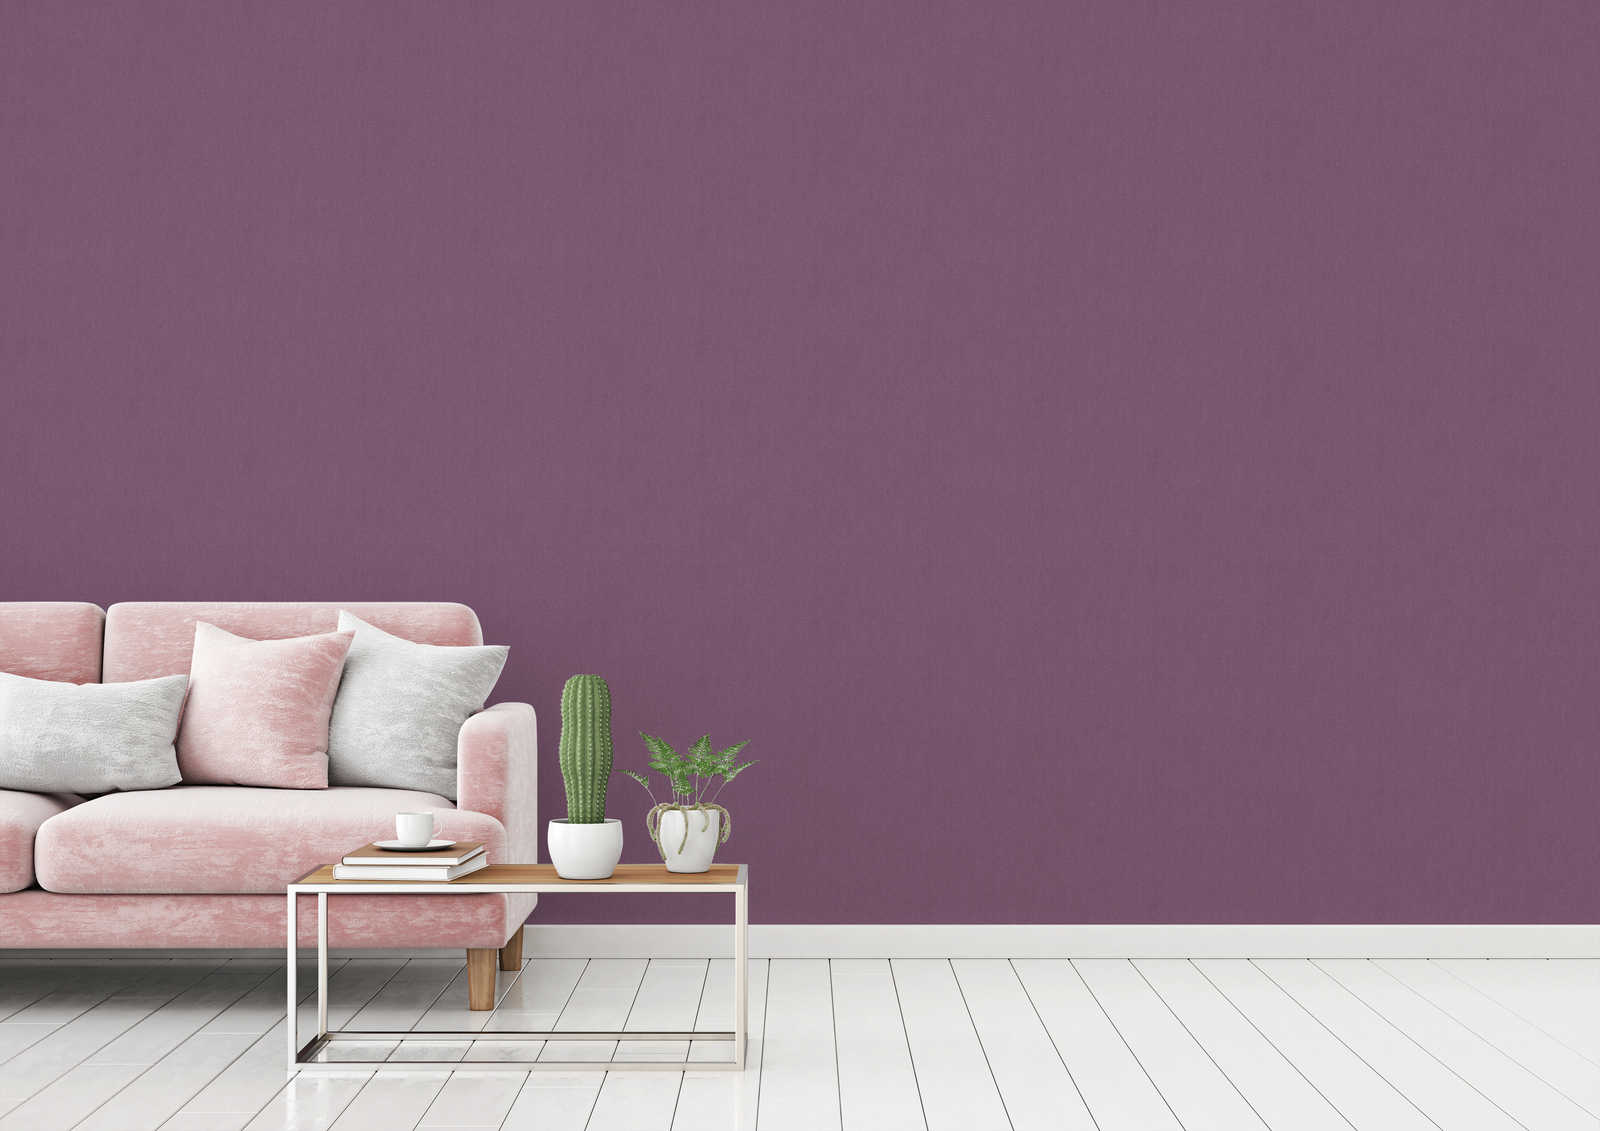             Purple wallpaper plain, matte textile look & fabric texture
        